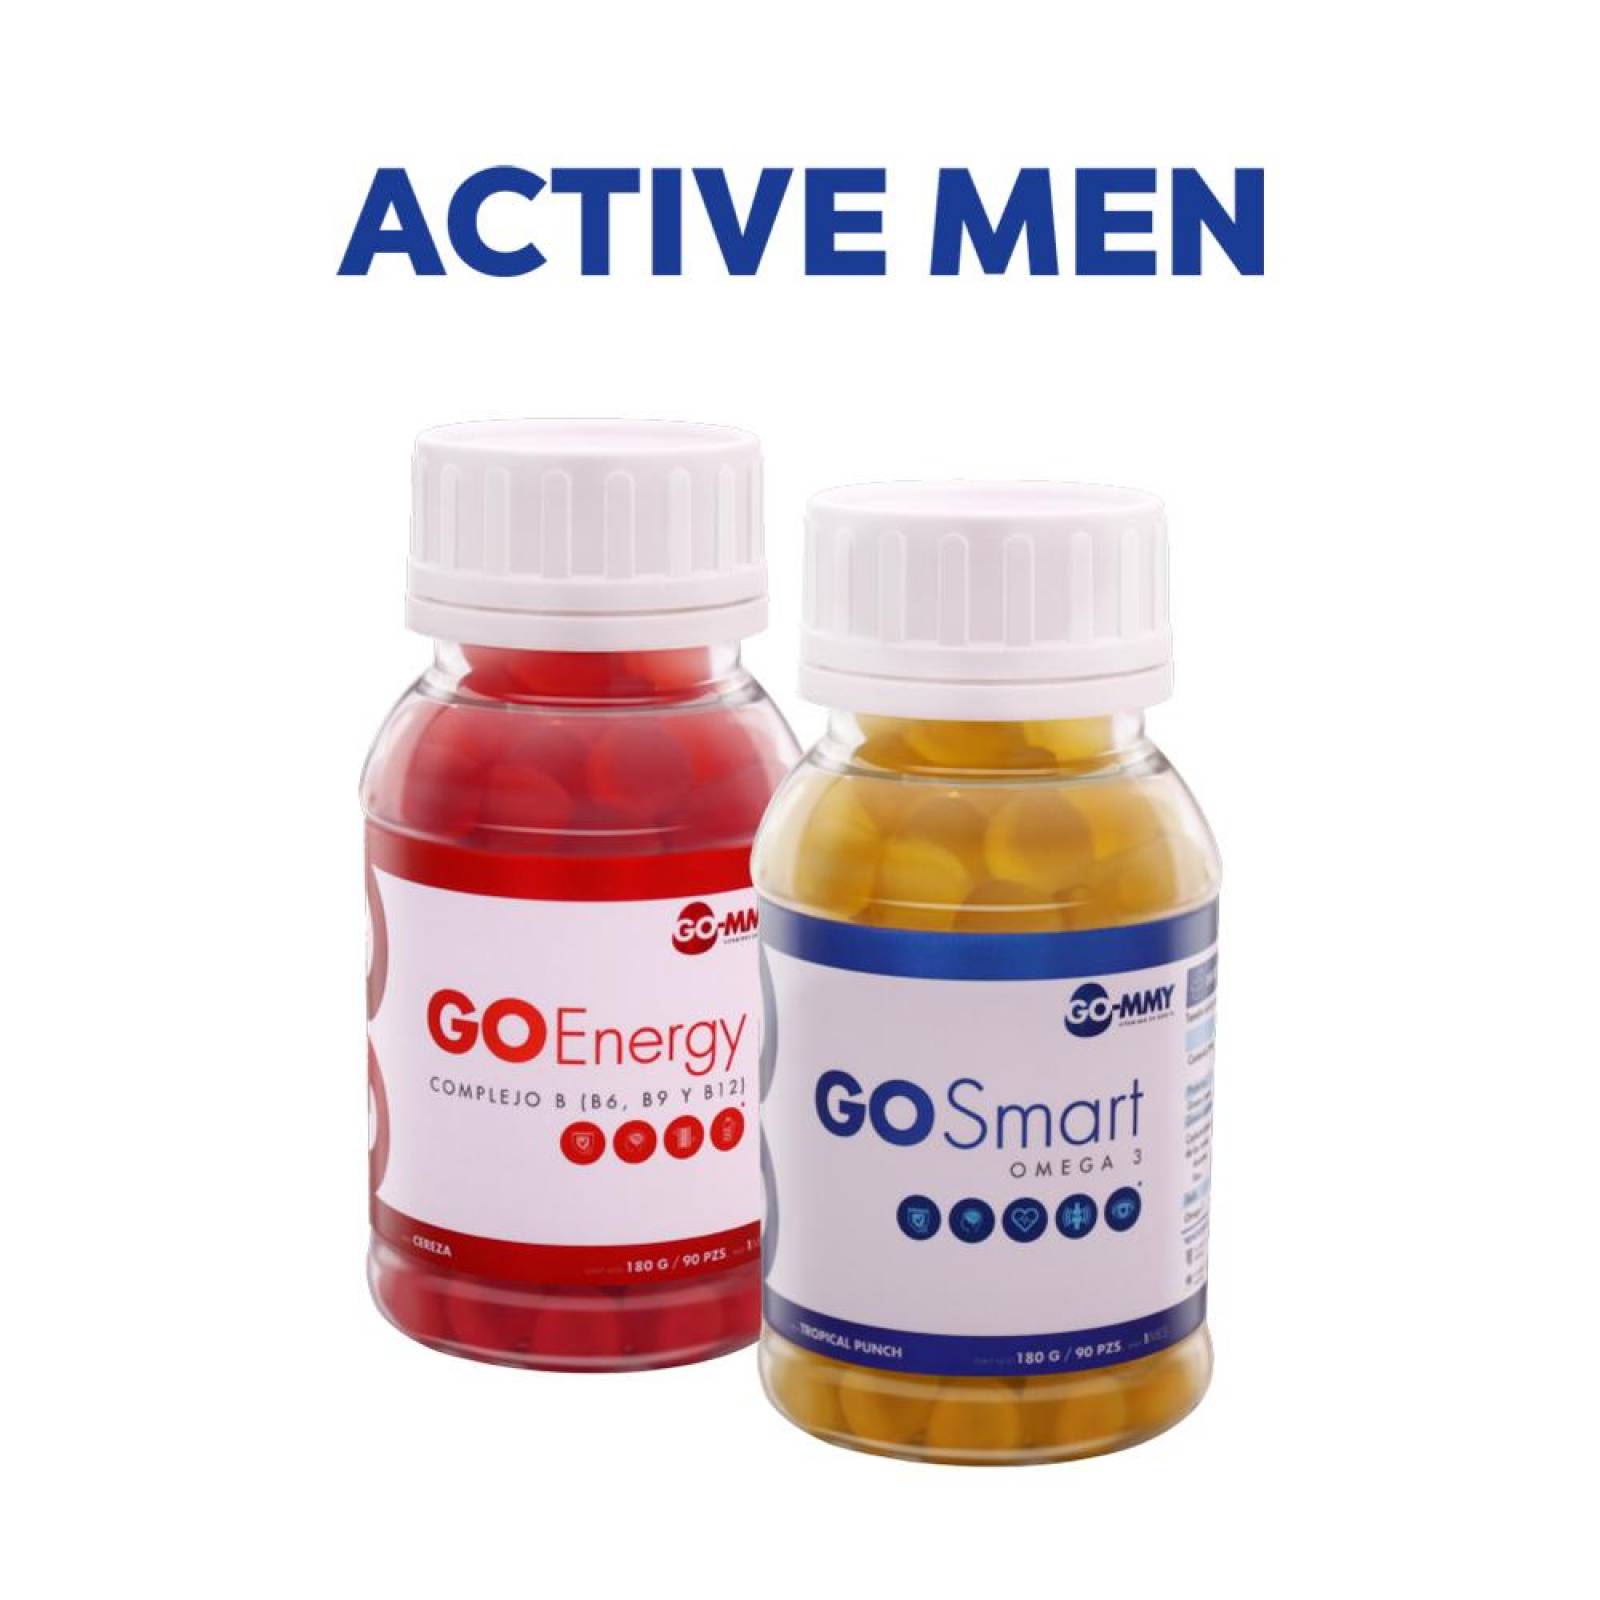 Complejo B( B6, B9 Y B12)+Omega3 GO-MMY ActiveMen (2 frascos) Cereza